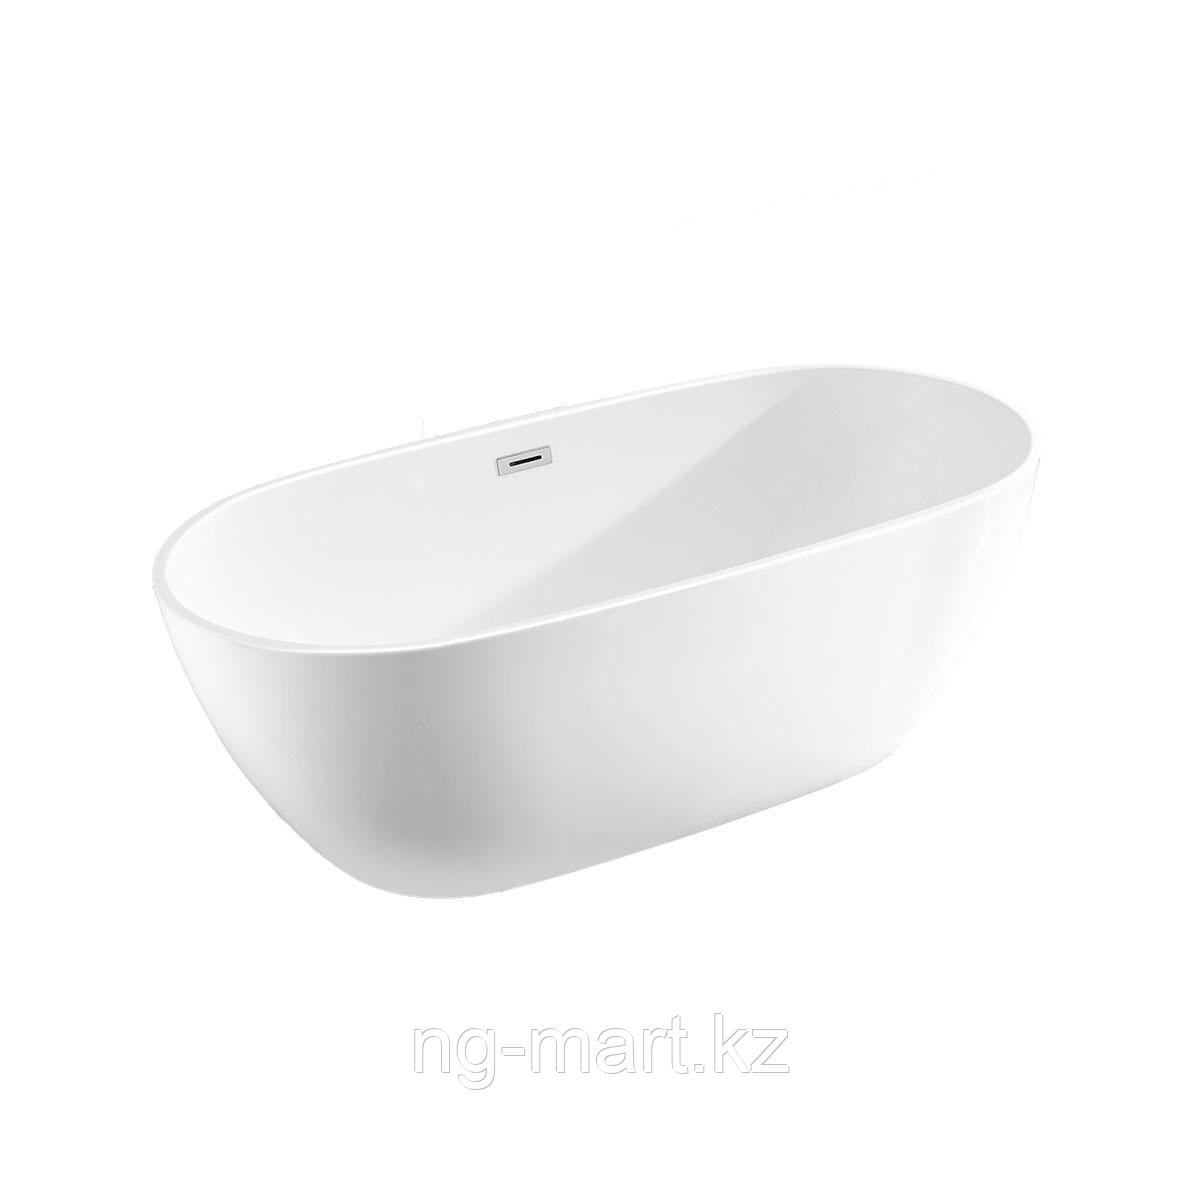 Ванна акриловая Vincea VBT-408-1700, 1700*815*580, цвет белый